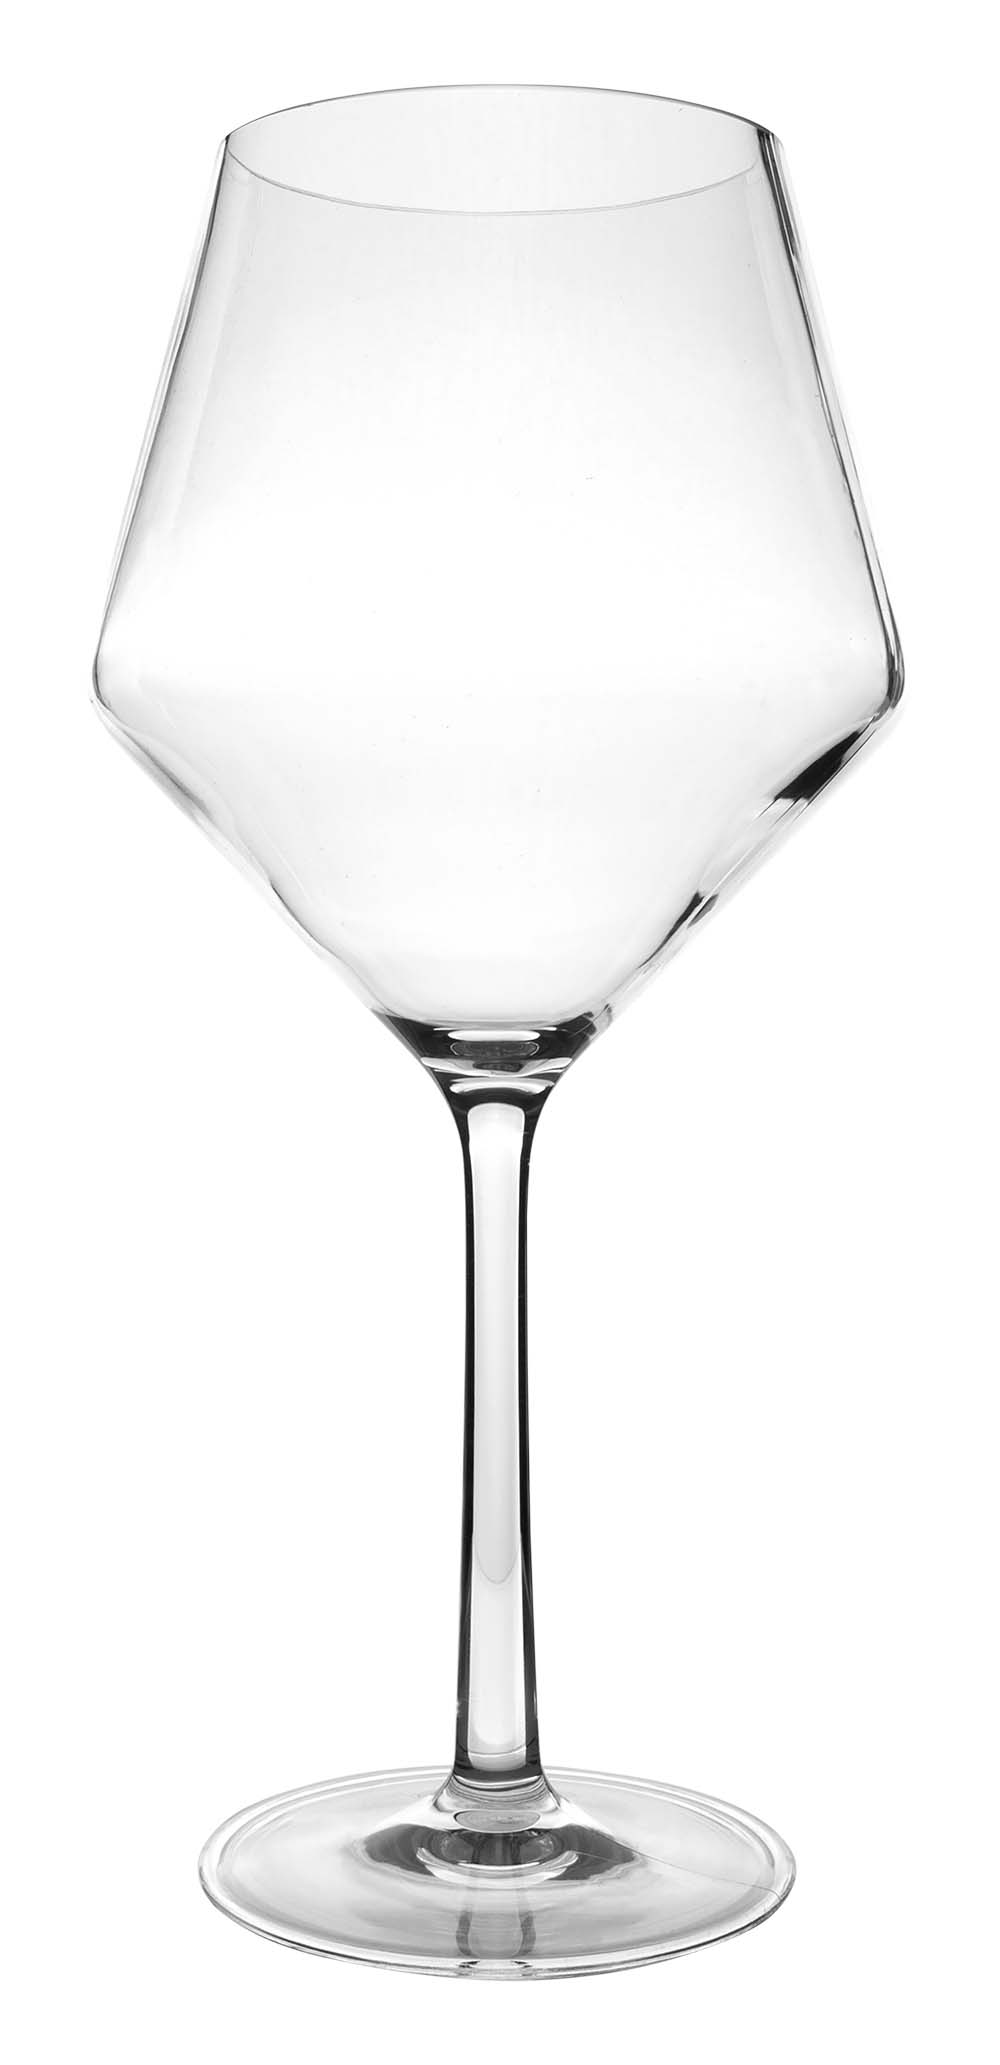 6101468 Una copa de vino tinto de lujo casi irrompible con un diseño redondo y elegante. Apto para lavavajillas, ligero y aún mejor resistente a los arañazos. Fabricado en tritán resistente. Un juego de 2 vasos. Los vasos no contienen BPA.